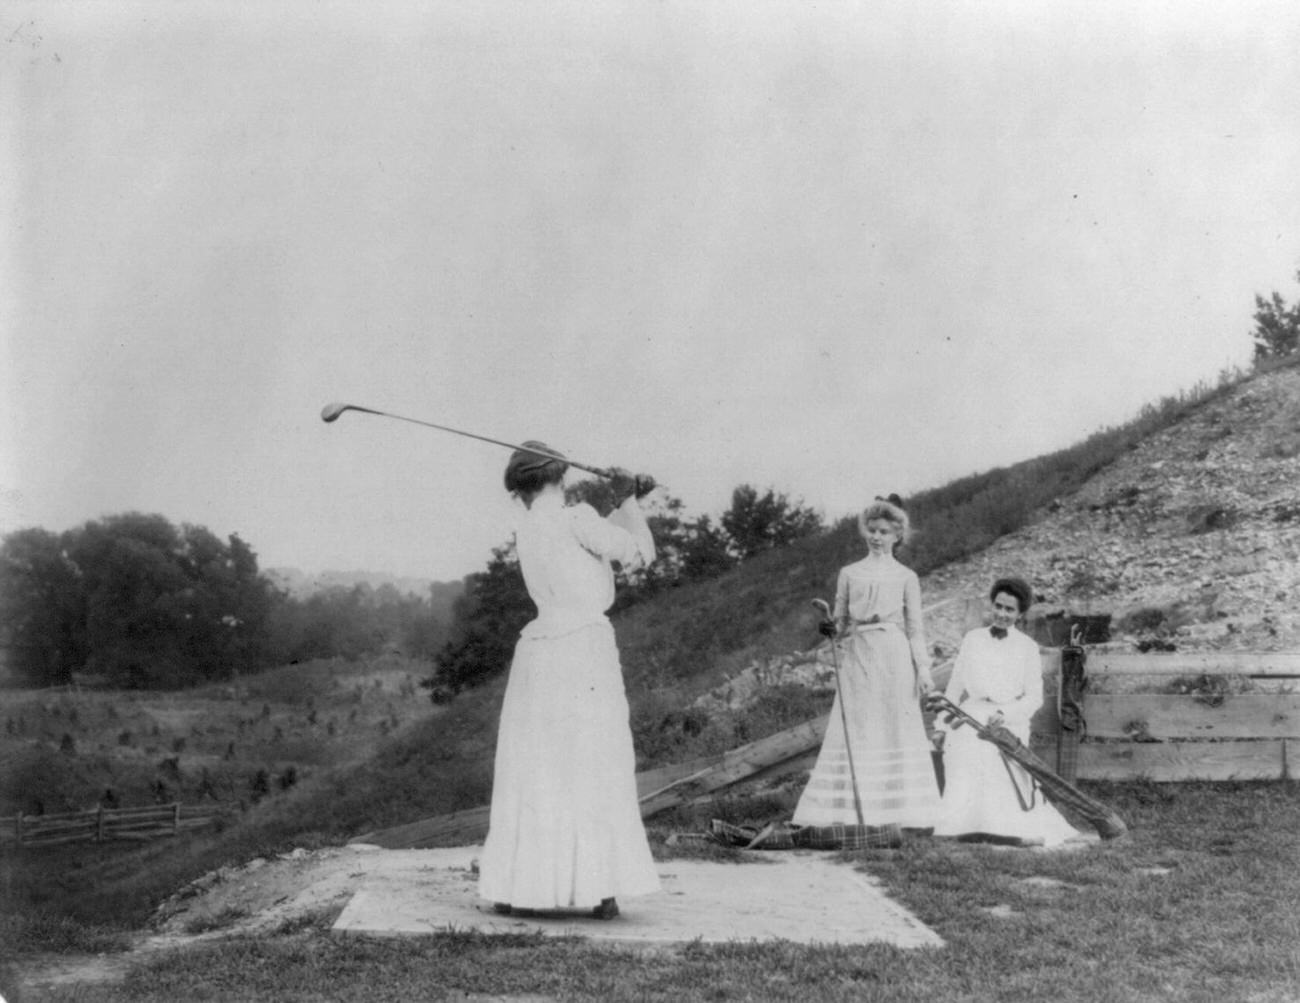 Three women playing golf at Jackson Sanitorium, circa 1890.